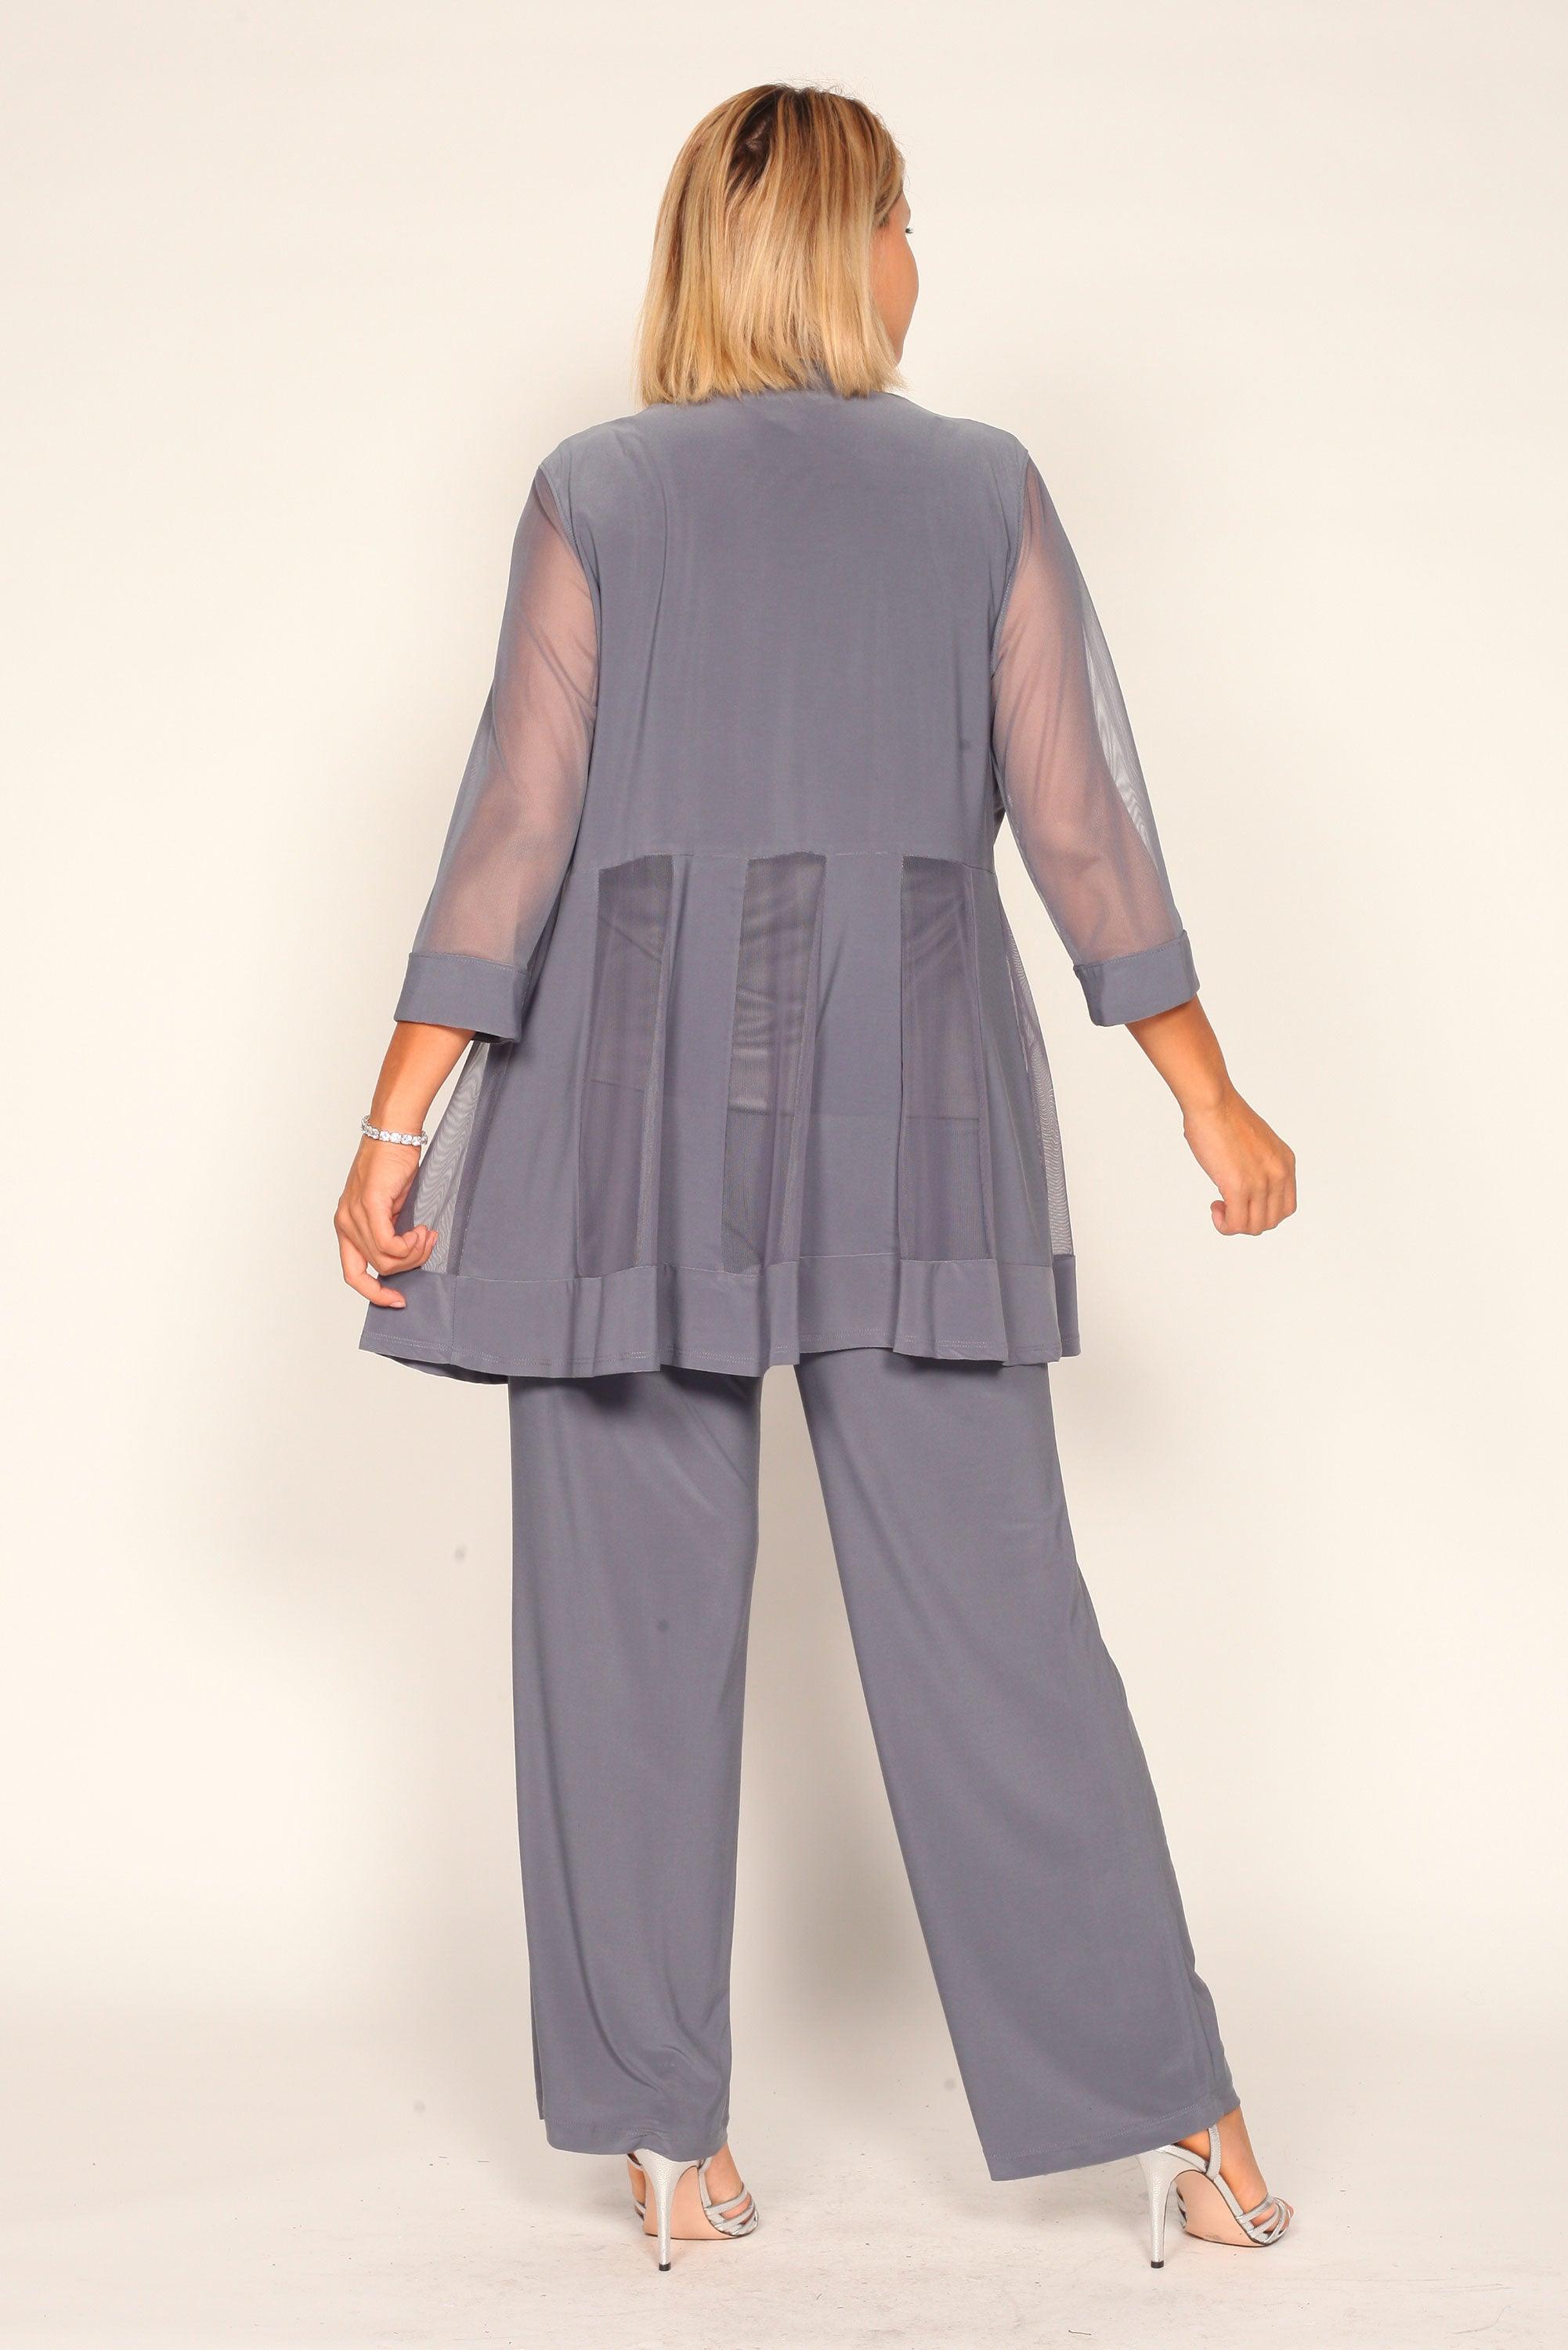 R&M Richards Formal Pant Suit 5902  The Dress Outlet – Wholesale Dress  Outlet